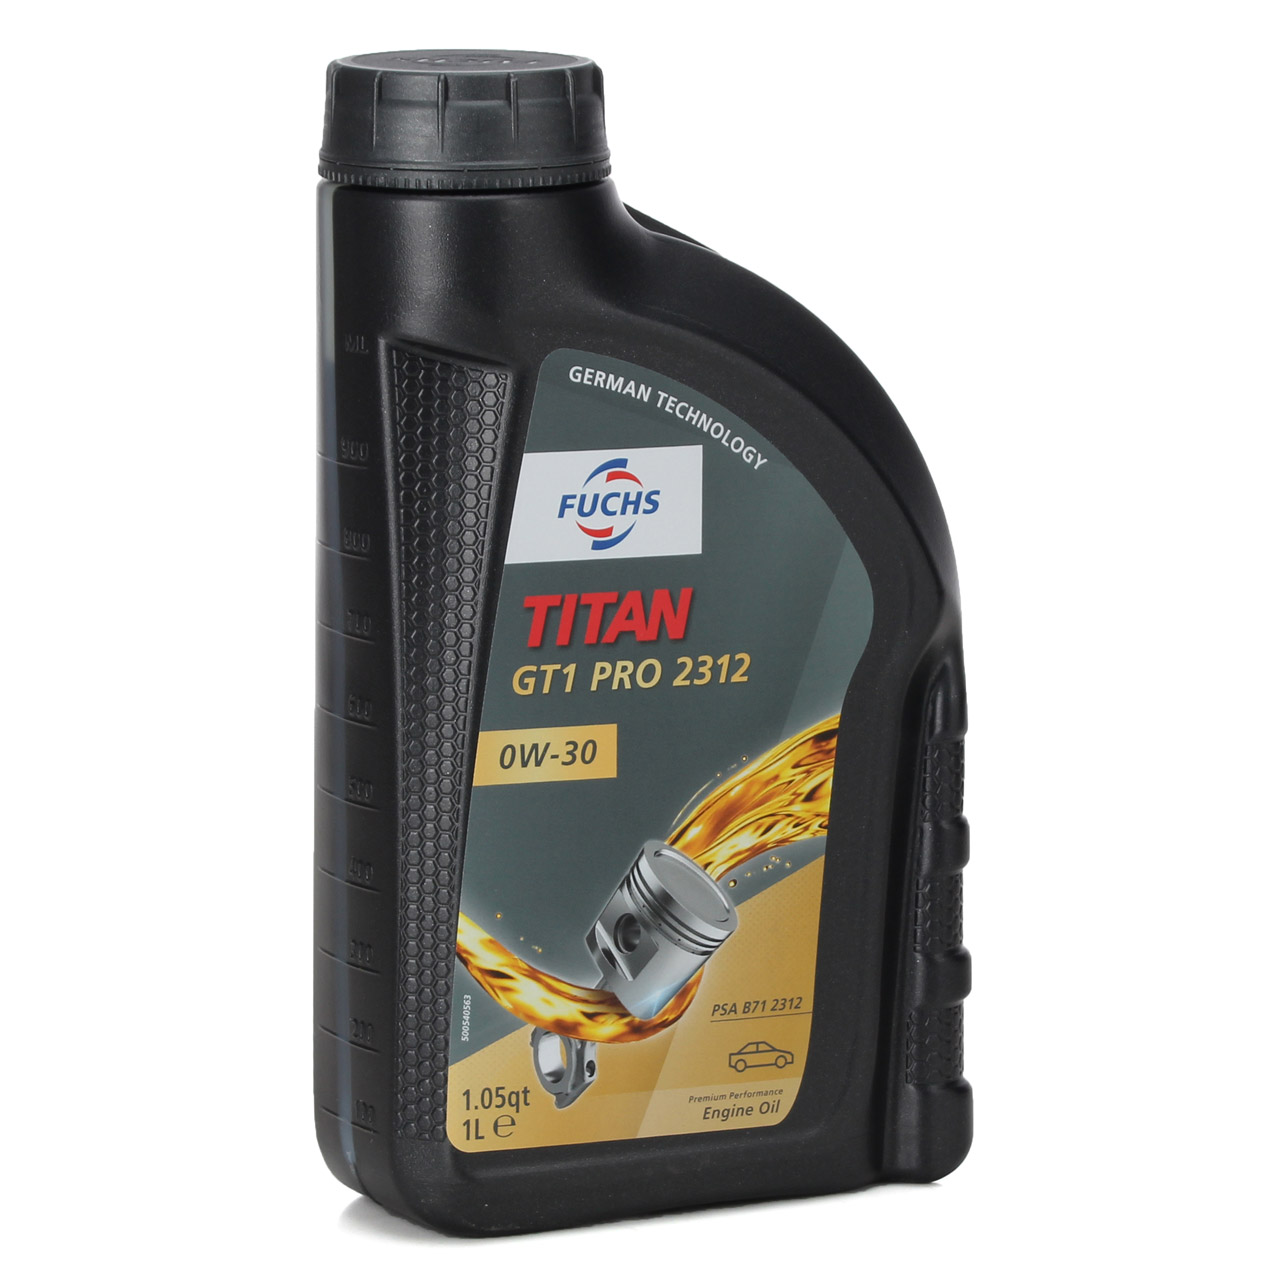 1L 1 Liter FUCHS TITAN GT1 PRO 2312 0W-30 0W30 Motoröl Öl ACEA C2 PSA B71 2312